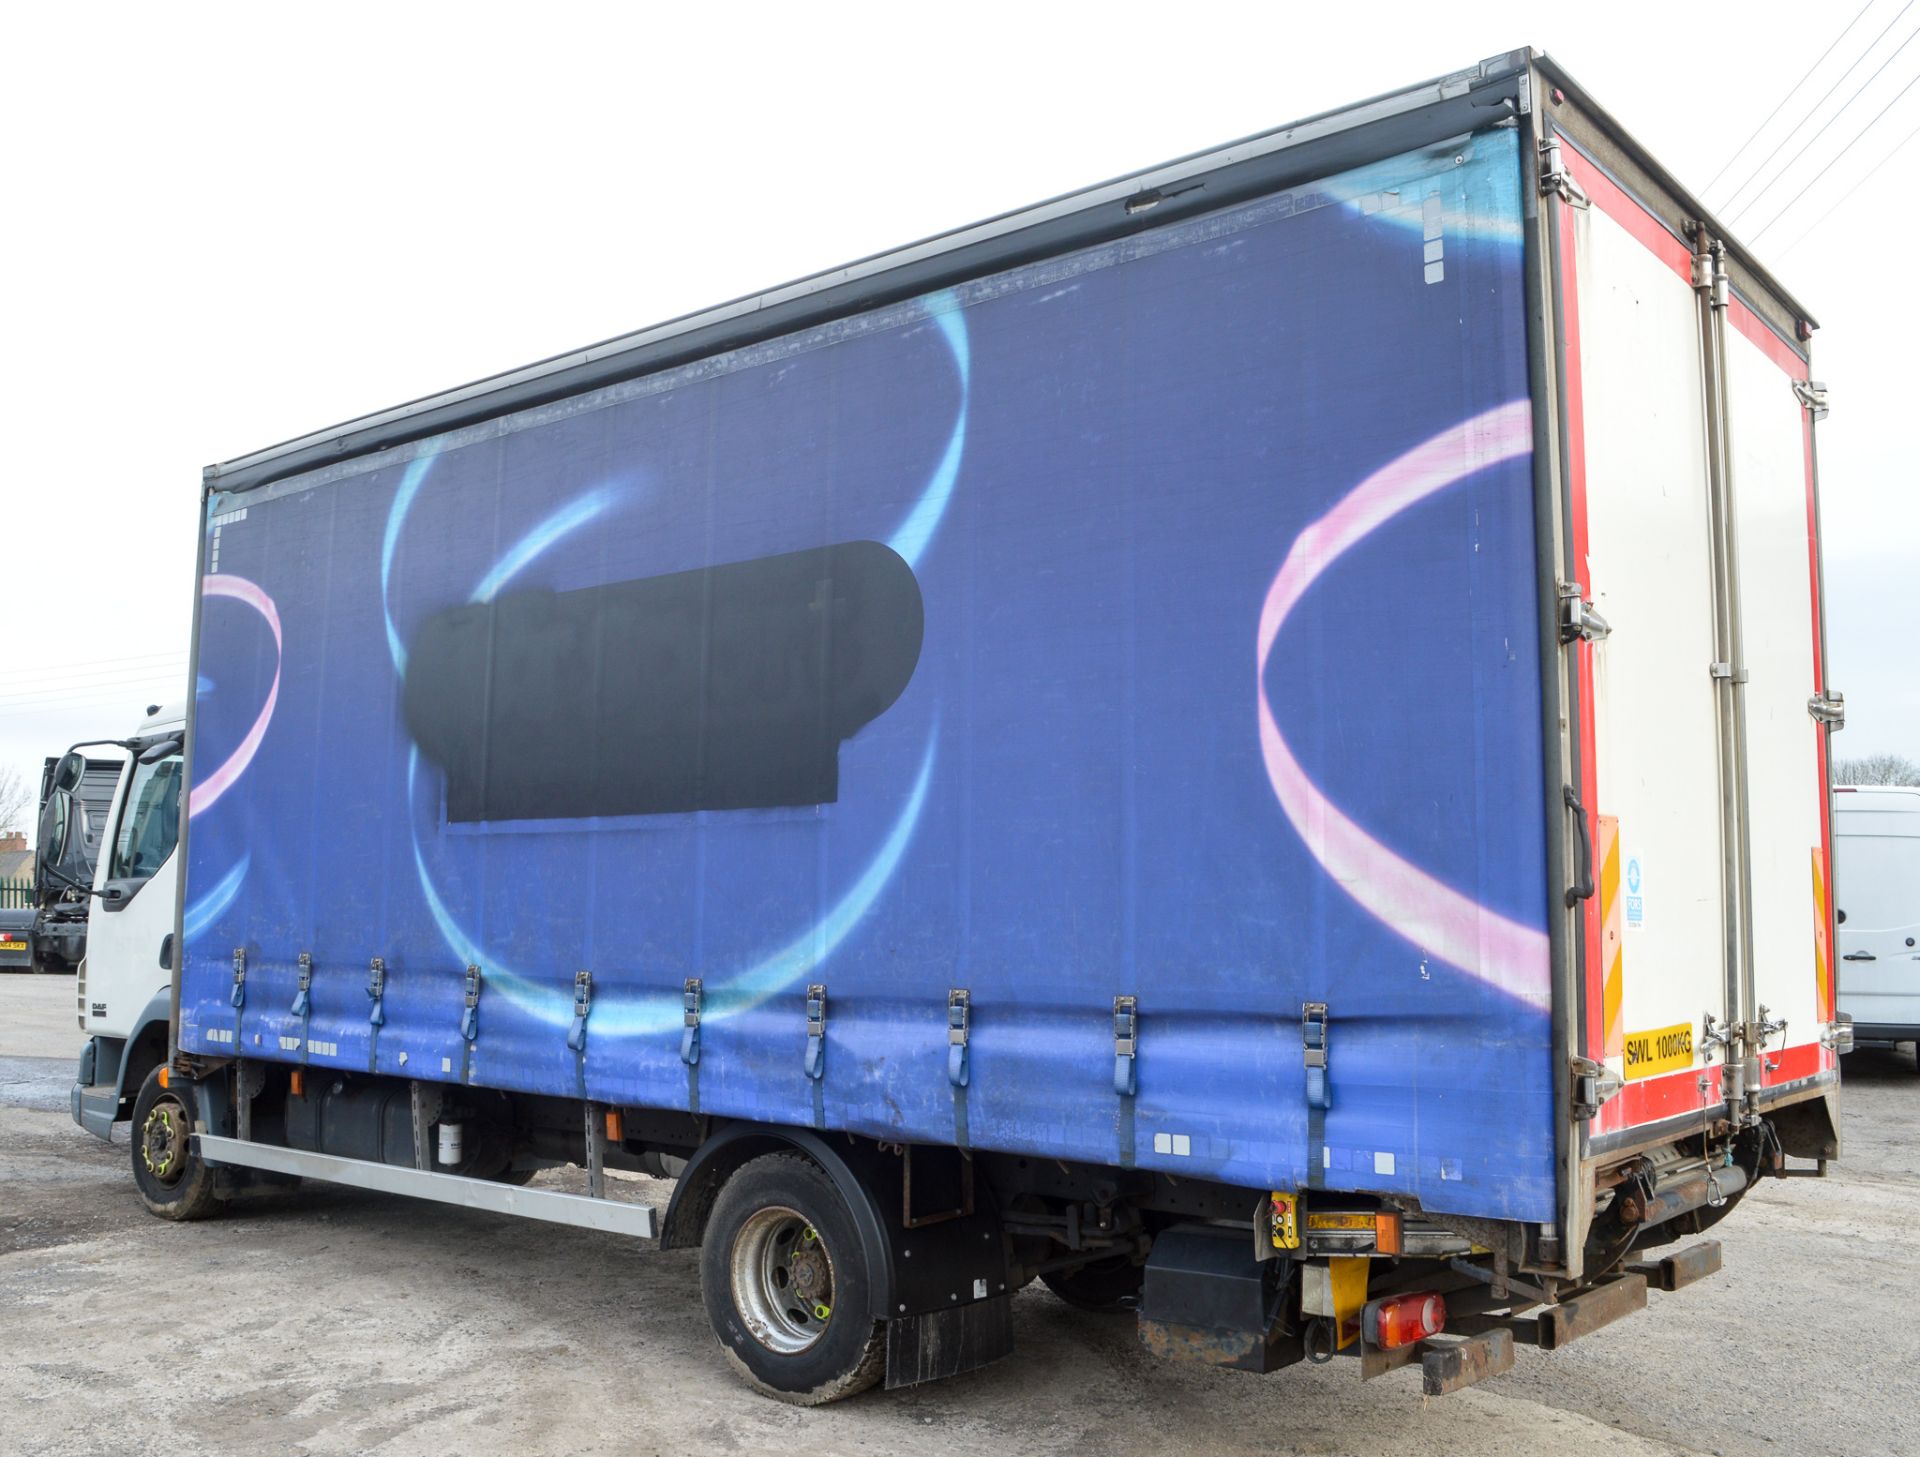 DAF LF 45.150 7.5 tonne curtain sided lorry (Ex BT) Registration Number: BX06 LBV   c/w V5 - Image 3 of 10